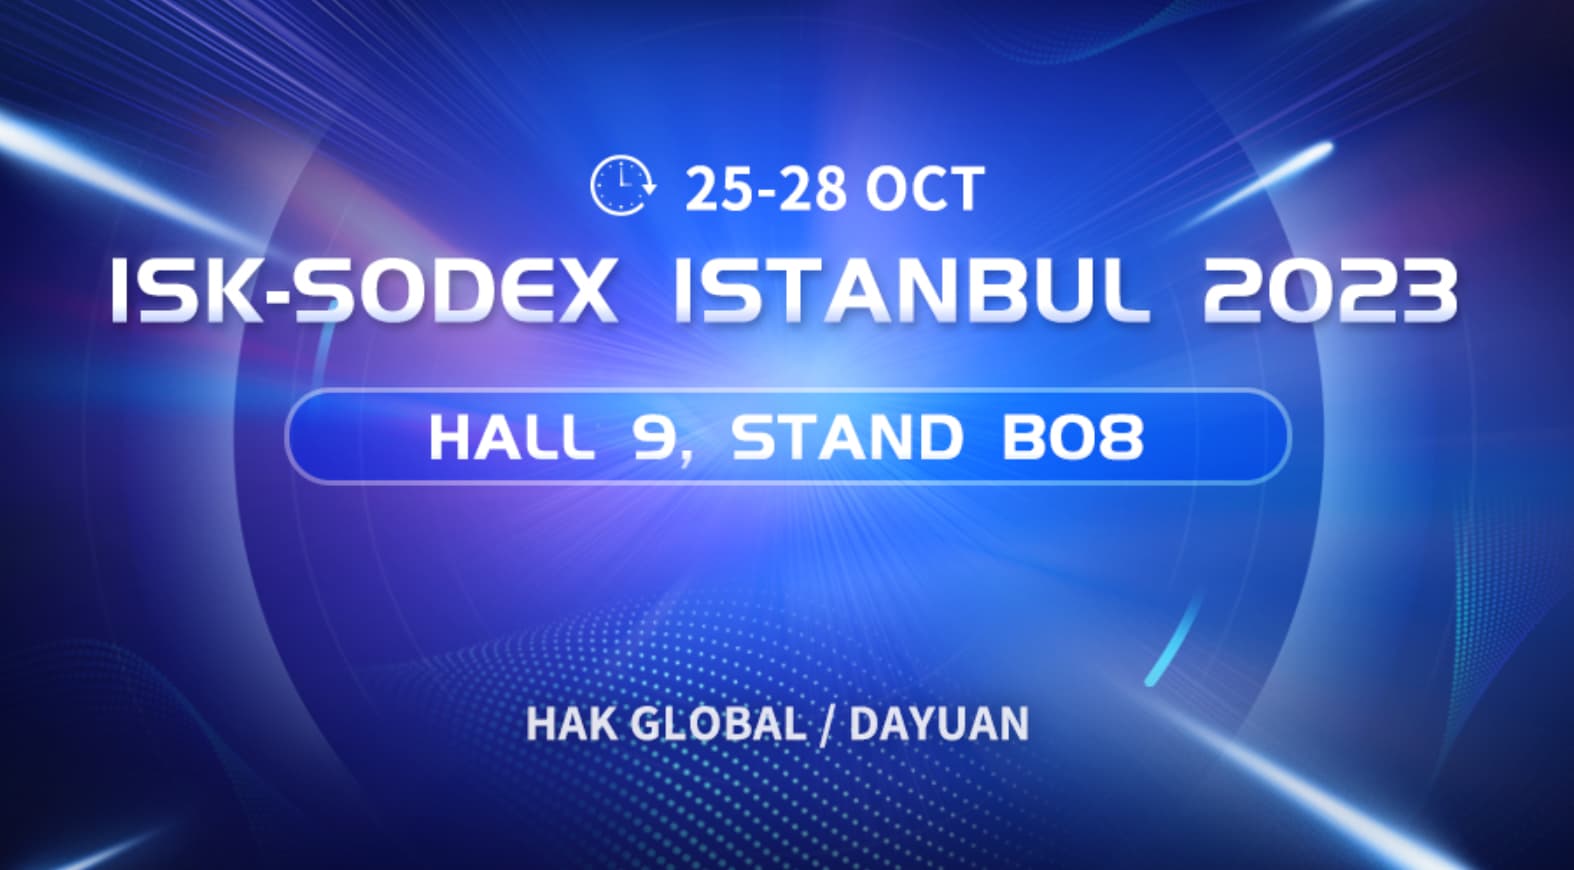 展覧会招待状 | ISK-SODEX ISTANBUL 2023でシンフと会う
    